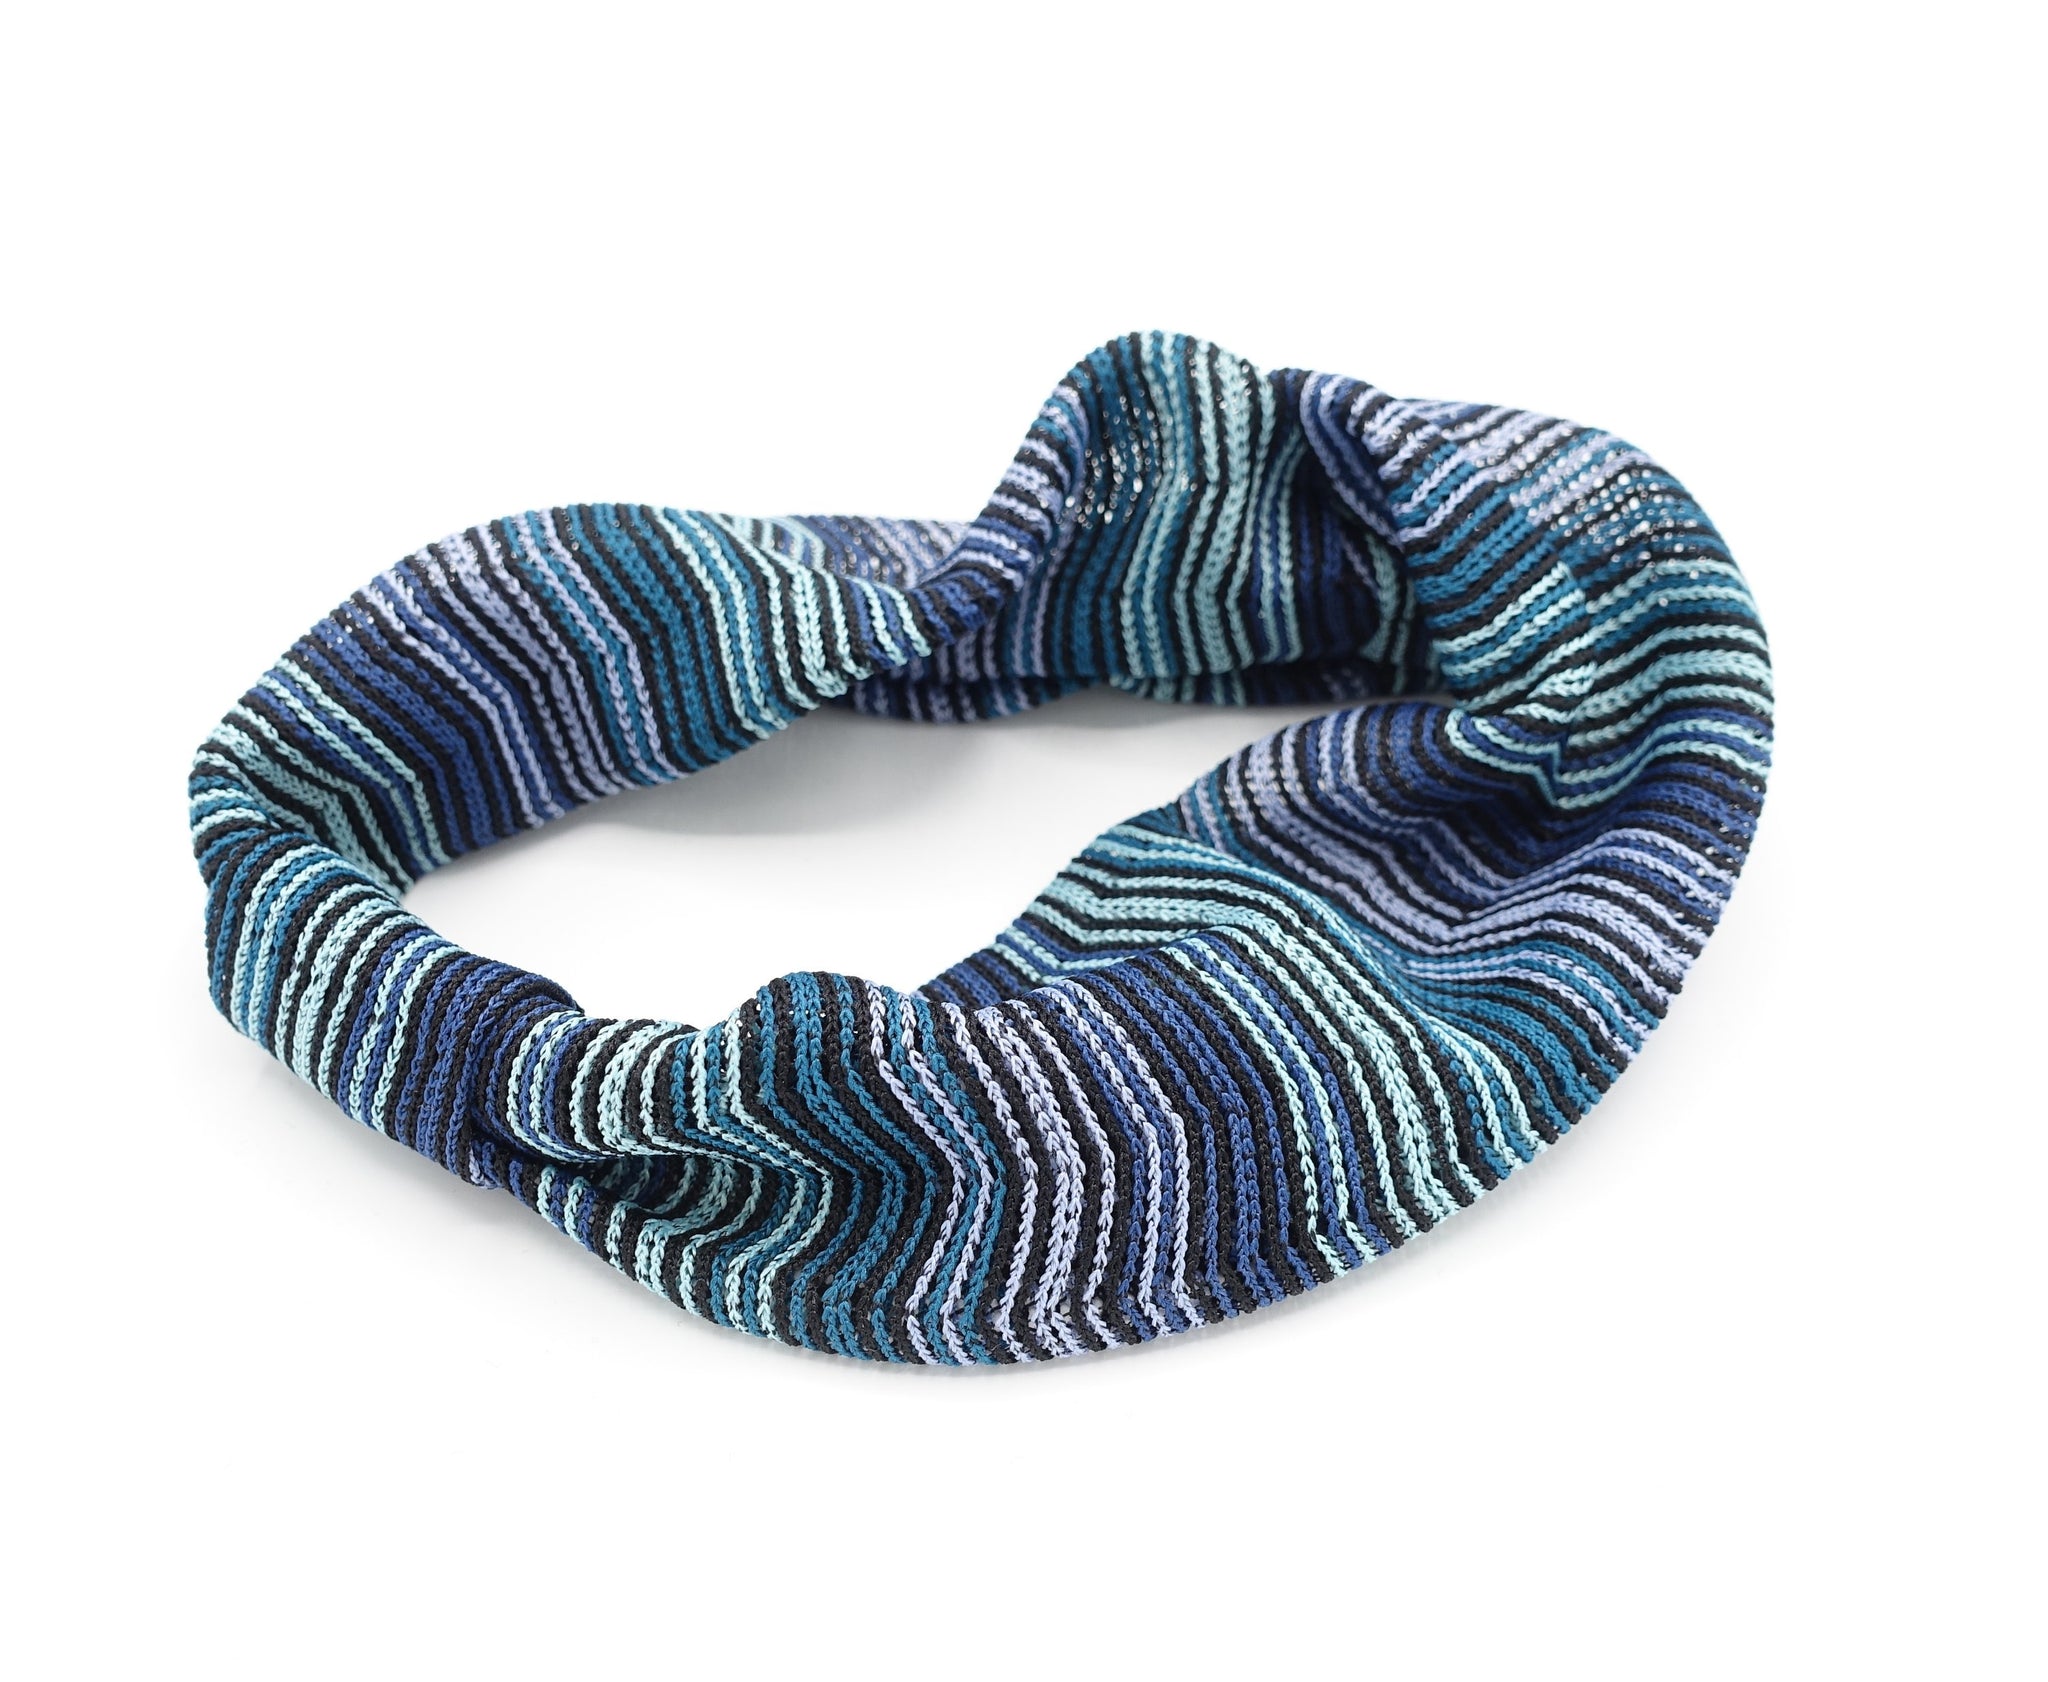 VeryShine hairband/headband Blue green Zigzag knit turban headband